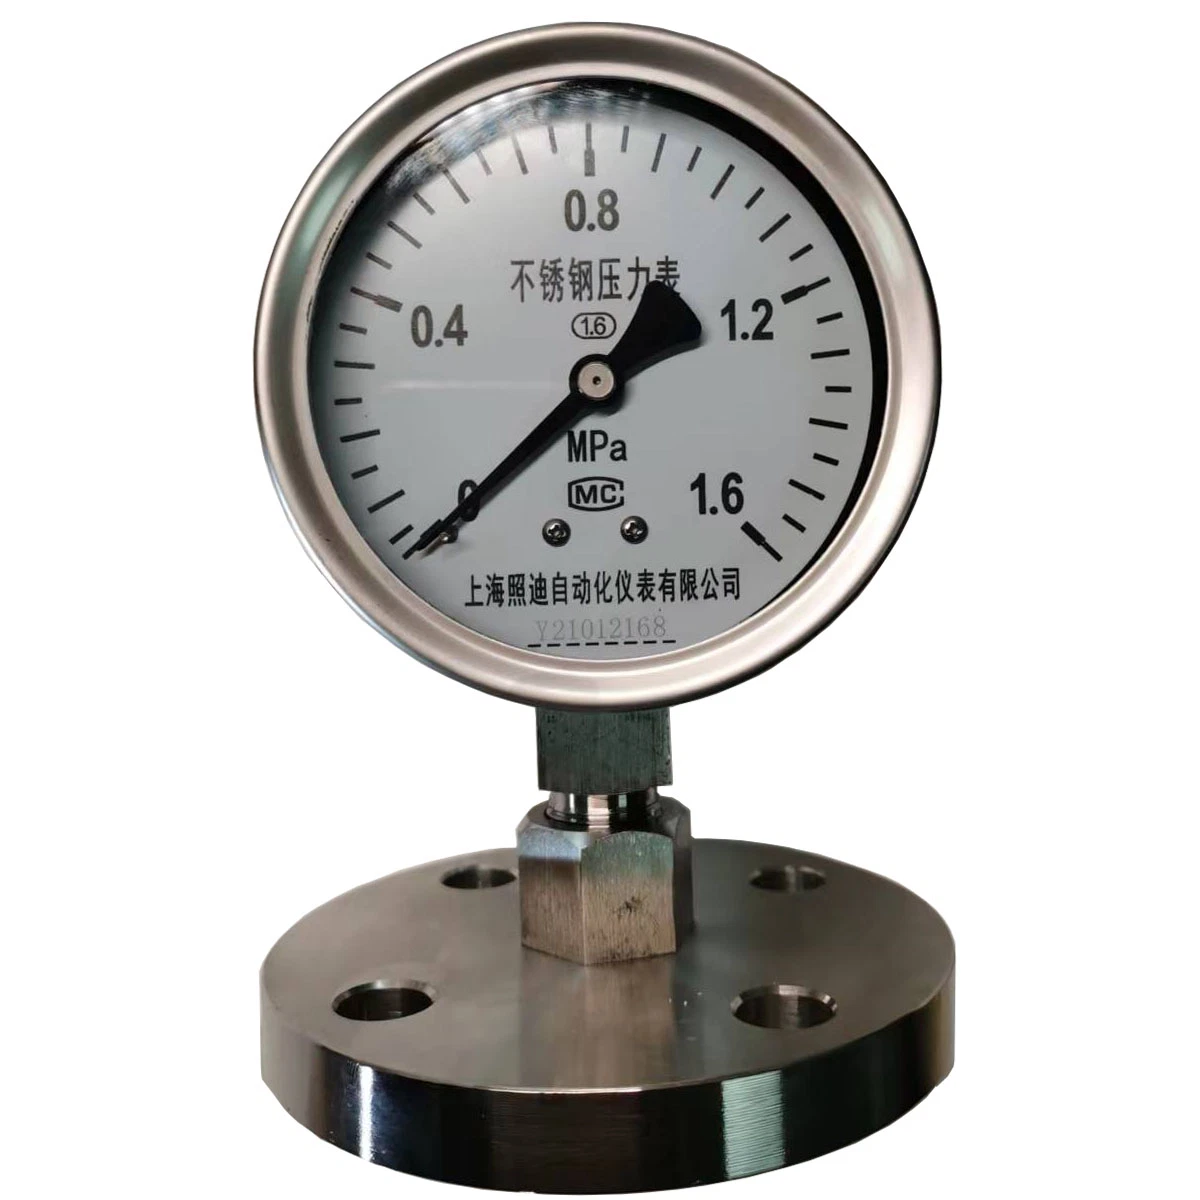 مقياس ضغط من الفولاذ المقاوم للصدأ معتمد من قبل CE لأنبوب بوردون للأكسجين